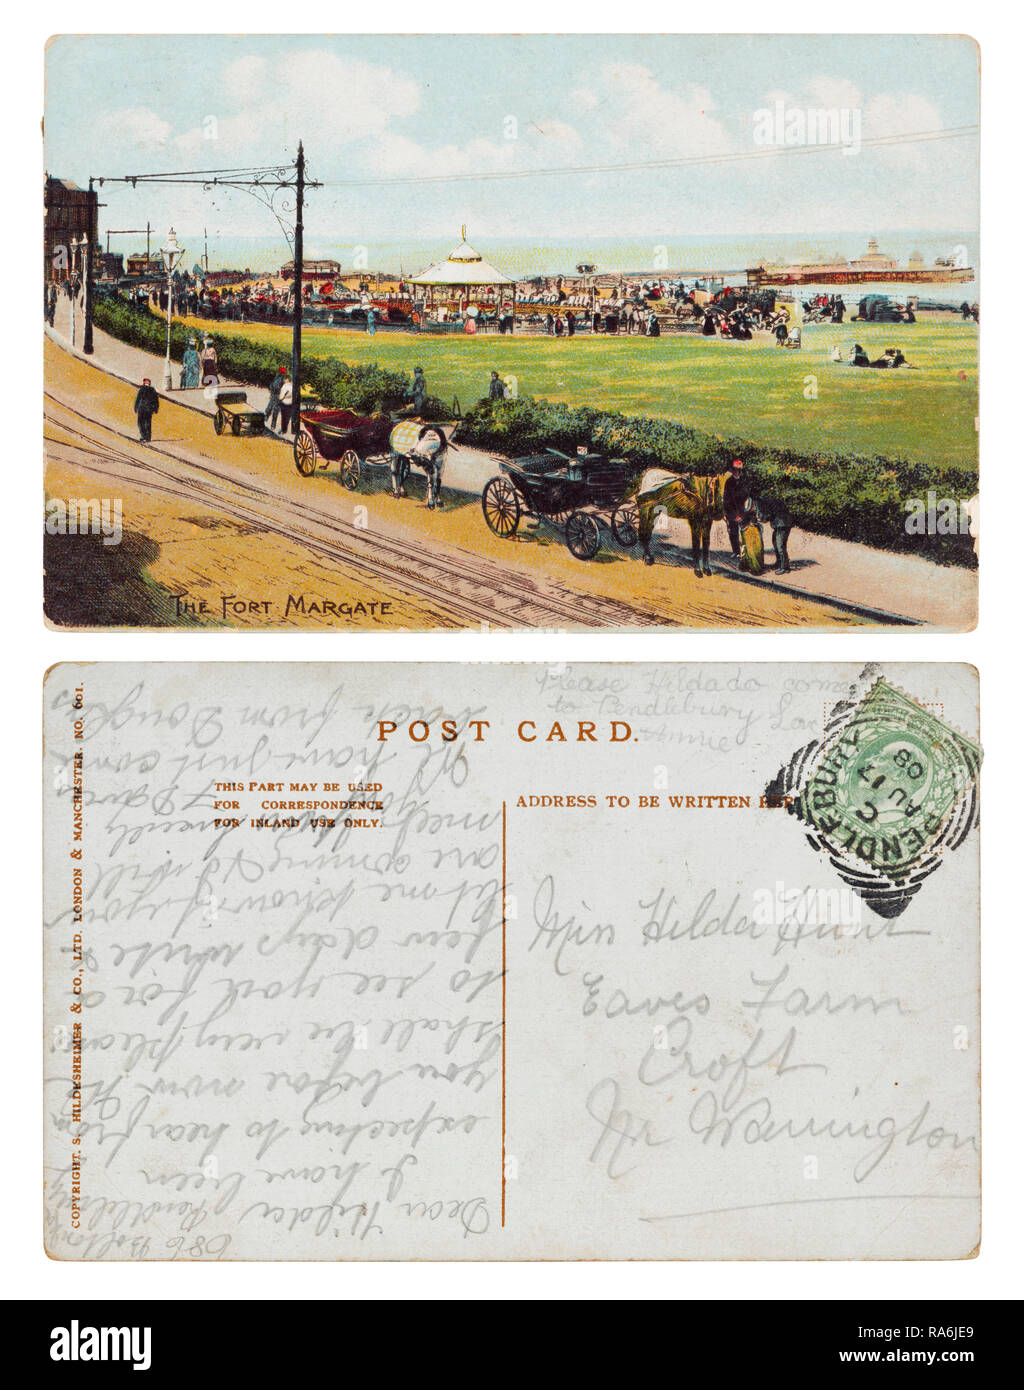 Postales de la Fort Margate enviados desde 686 Bolton Road, Pendlebury a la Srta. Hilda Hunt, aleros de granja, Croft, Warrington, en agosto de 1908 Foto de stock